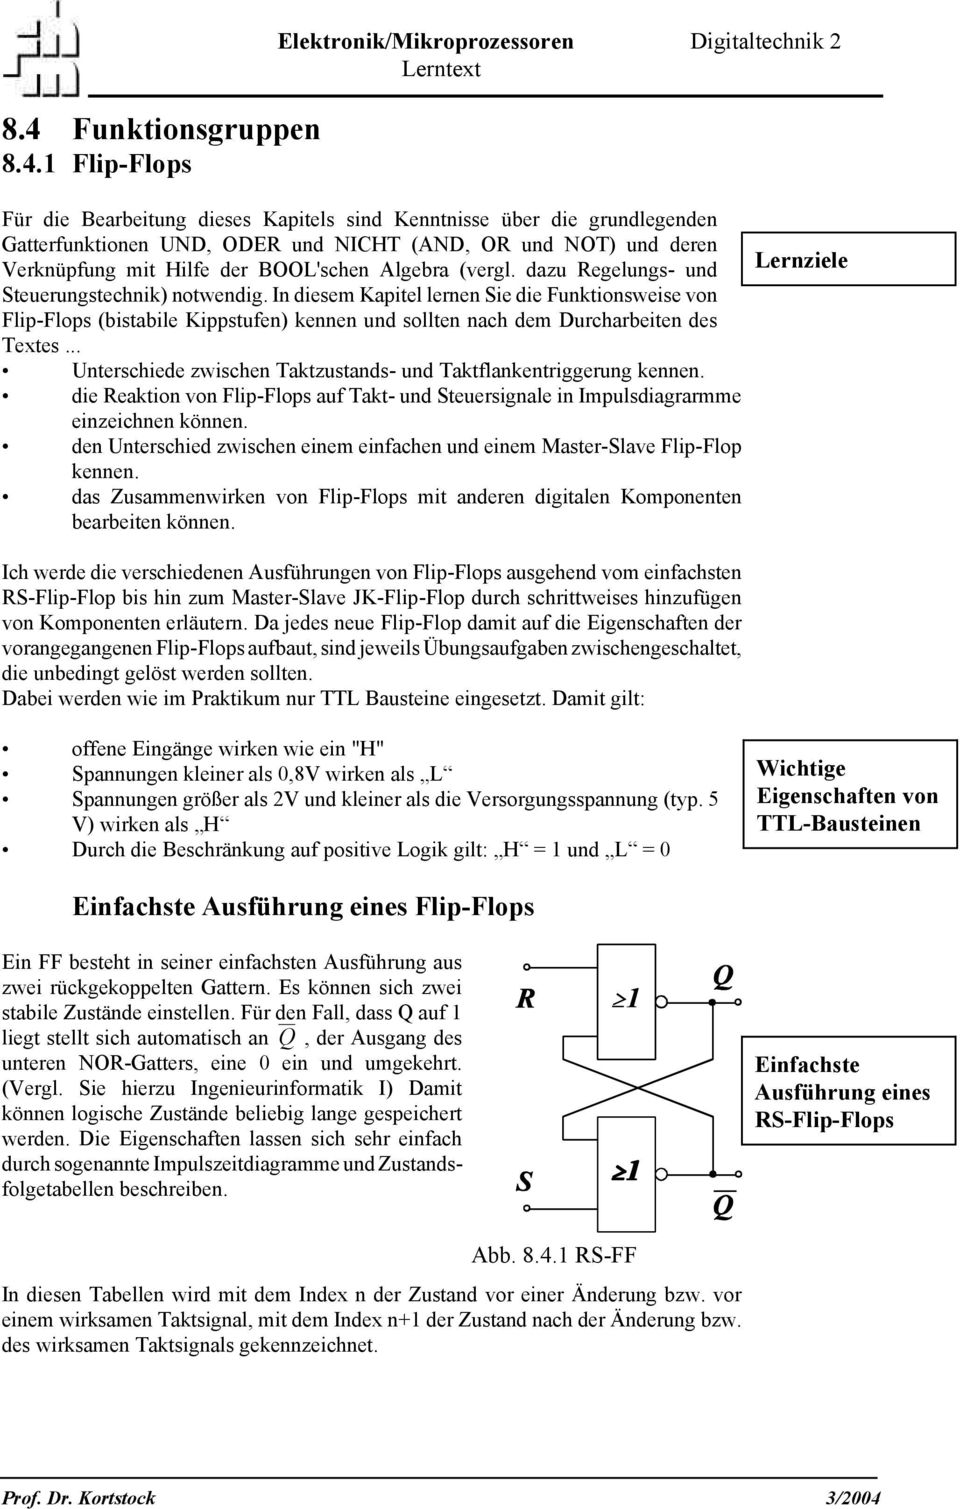 In diesem Kapitel lernen Sie die Funktionsweise von Flip-Flops (bistabile Kippstufen) kennen und sollten nach dem Durcharbeiten des Textes.